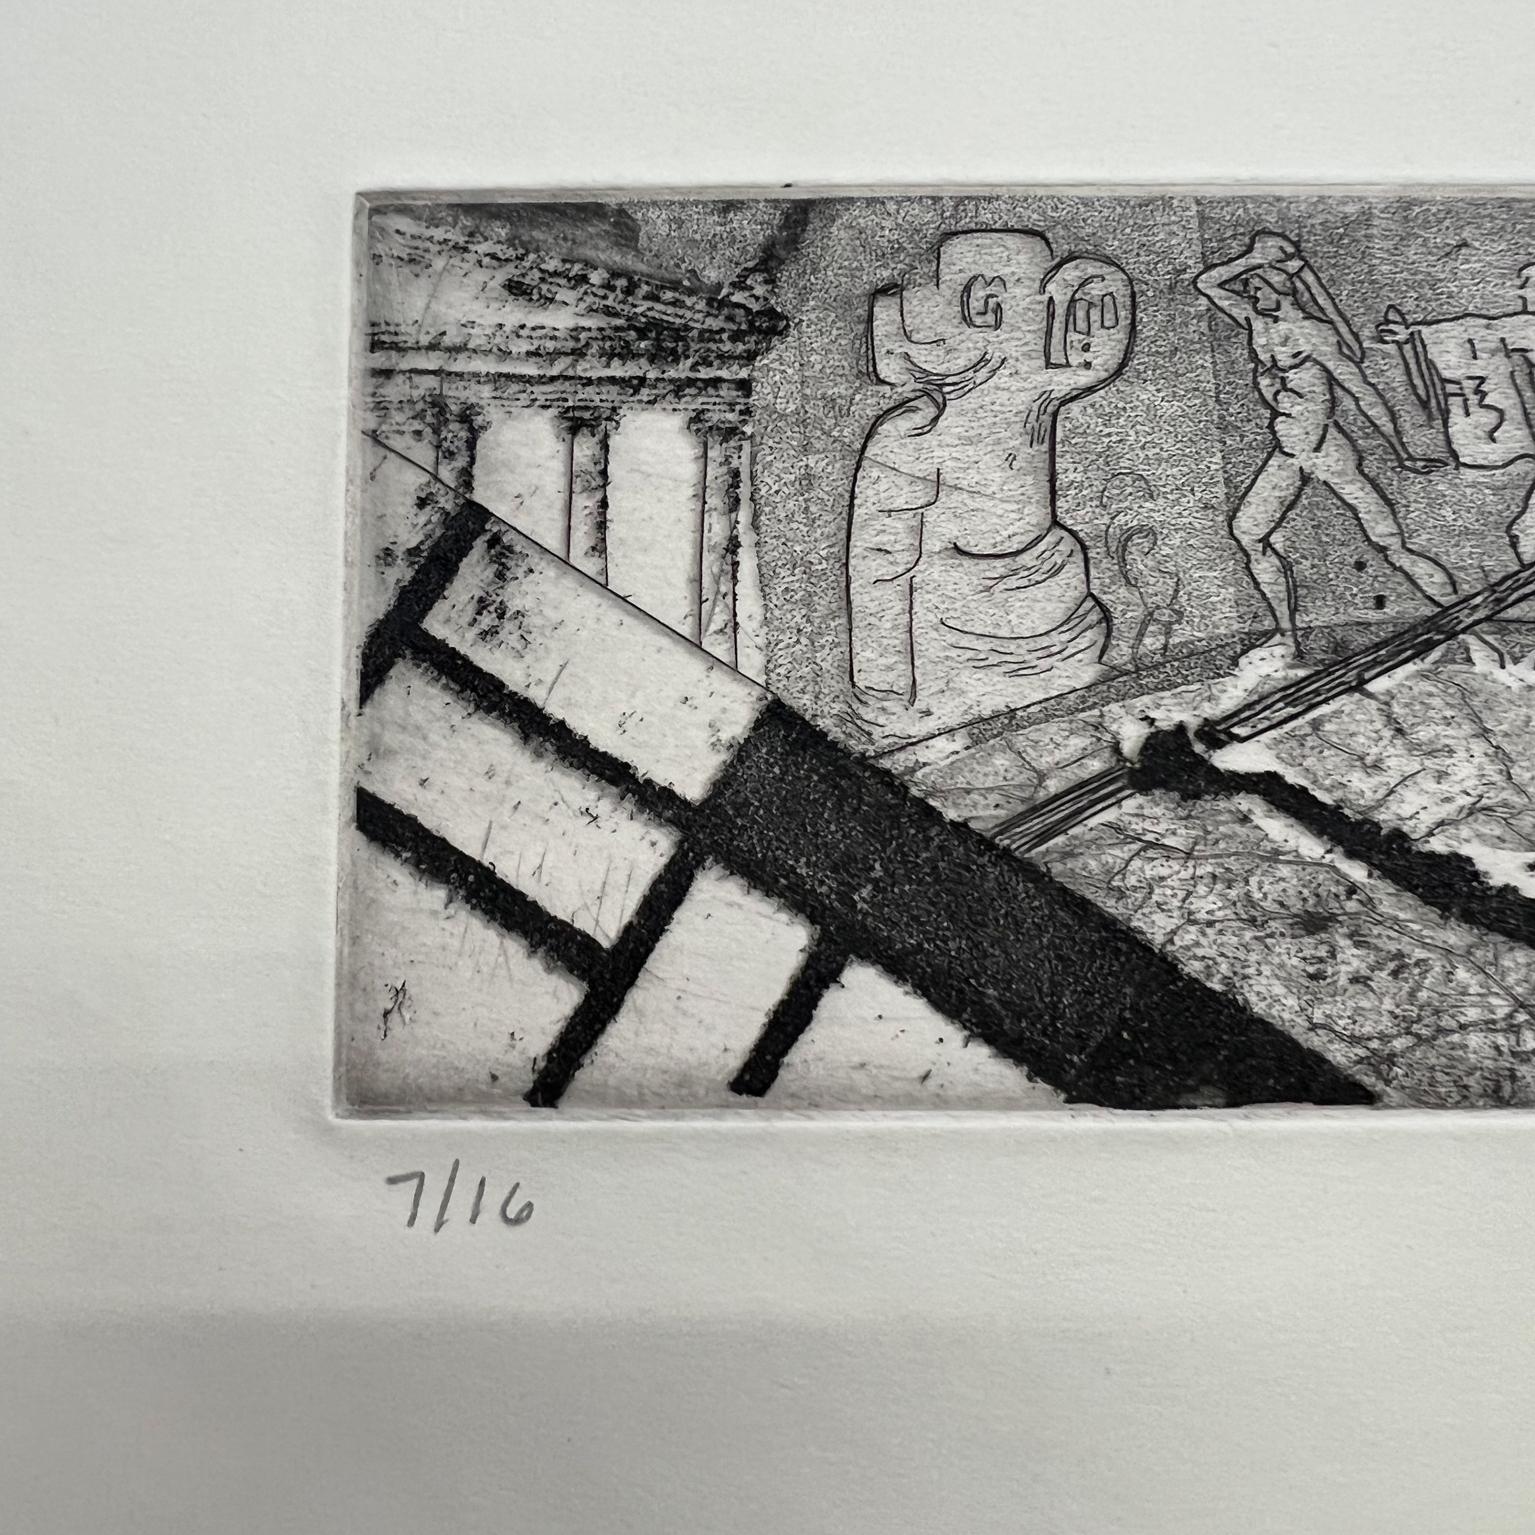 Ästhetischer Kampf 7/16 signiert P. Schaewe Druckvorlage auf Papier 
Signierte Kunst
Gebrauchter, unrestaurierter Vintage-Zustand. Fleck rechte Seite.
15.75 x 8 art 11,5 x 3.
Überprüfen Sie alle Bilder.